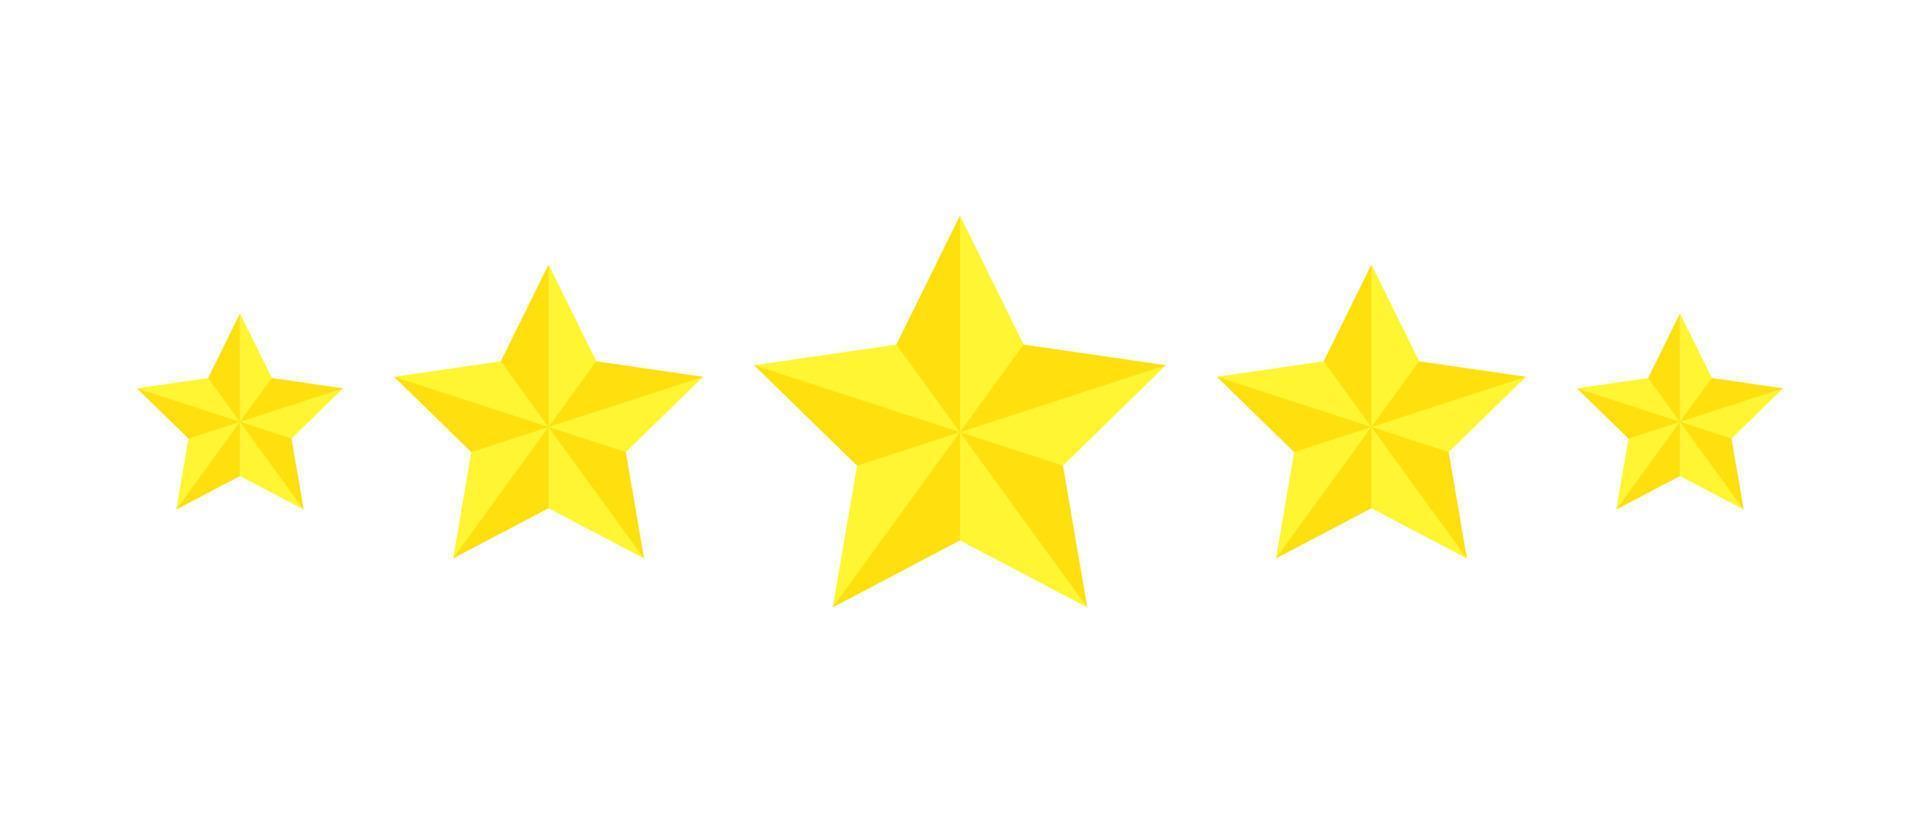 calificación de cinco estrellas, revisión de iconos planos para aplicaciones y sitios web. pegatina amarilla de 5 estrellas de rango aislada en un fondo blanco. para calificaciones de clientes o niveles de productos alimenticios, servicios, hoteles o restaurantes. vector